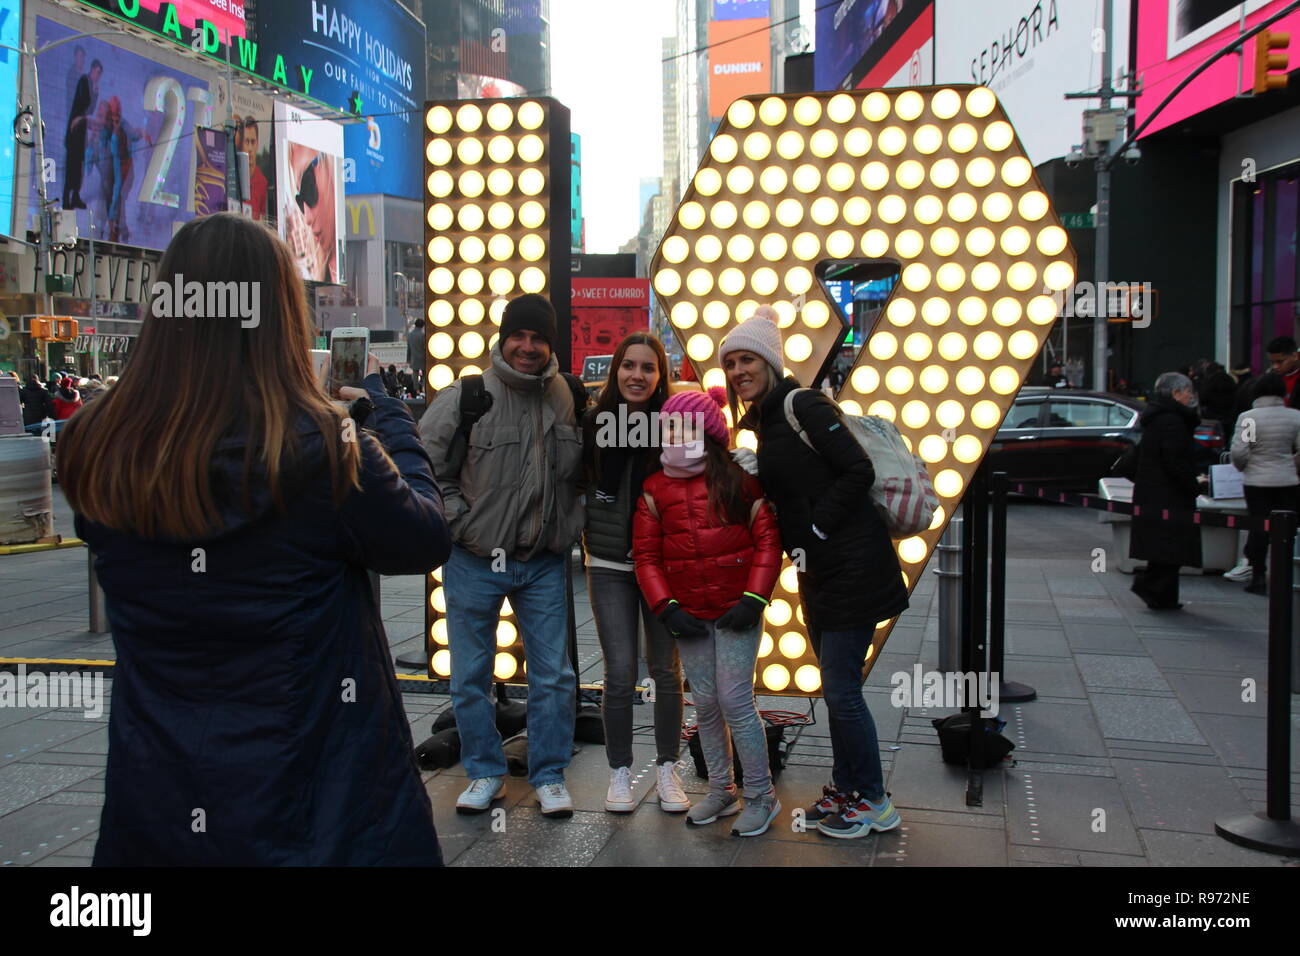 New York, USA. Dec 19, 2018. Visiteurs en ligne Times Square en face de l'allumé 19 pour une photo. Dans les prochains jours, les chiffres sont d'être hissé à bord, ainsi qu'une tour afin de former la nouvelle année 2019 avec la '2' et '0'. (Dpa ''19' : Times Square se prépare pour Silvesterspektakel' à partir de 20.12.2018) Crédit : Christina Horsten/dpa/Alamy Live News Banque D'Images